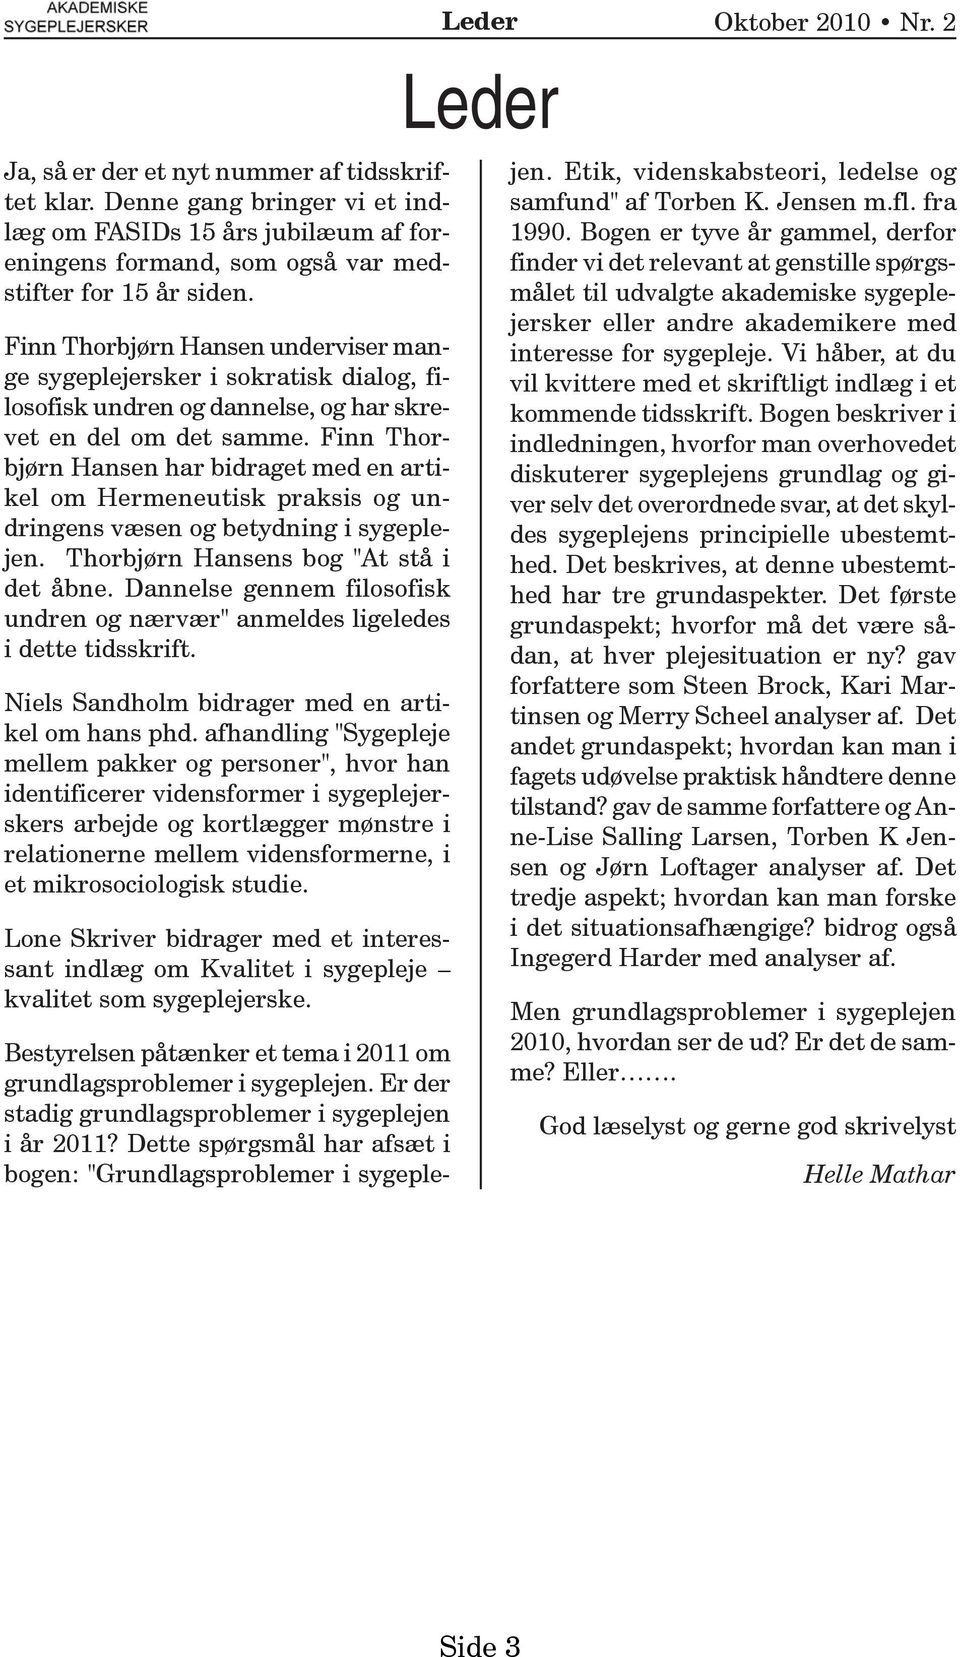 Finn Thorbjørn Hansen har bidraget med en artikel om Hermeneutisk praksis og undringens væsen og betydning i sygeplejen. Thorbjørn Hansens bog "At stå i det åbne.